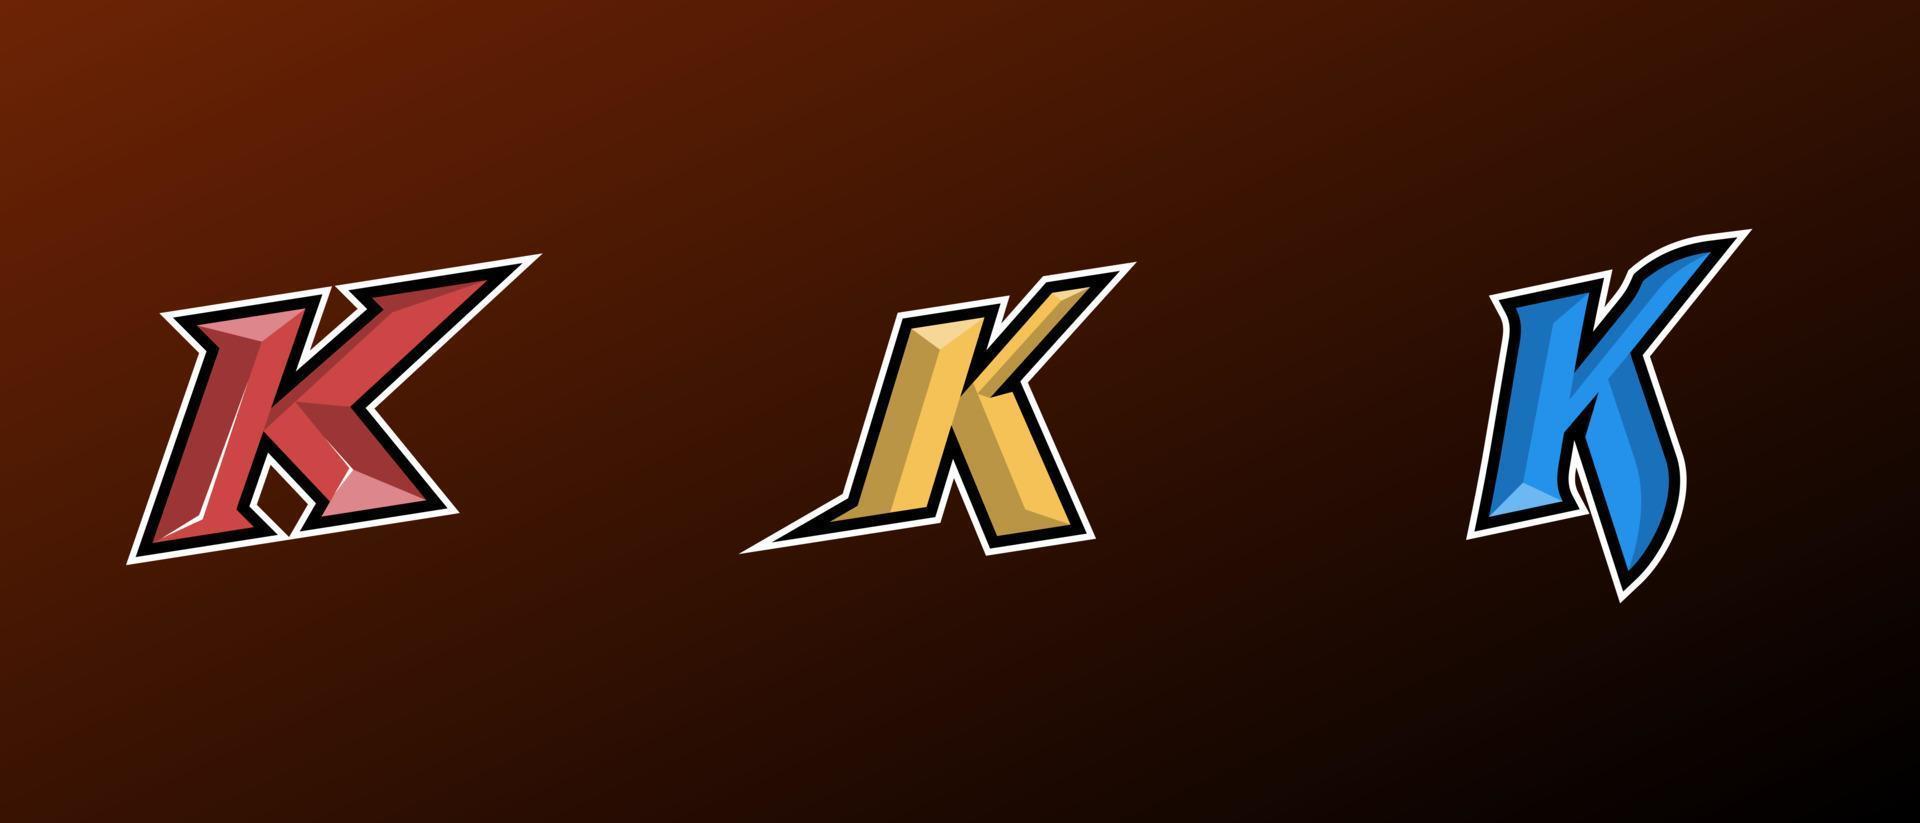 initiaal k esports-logo vector